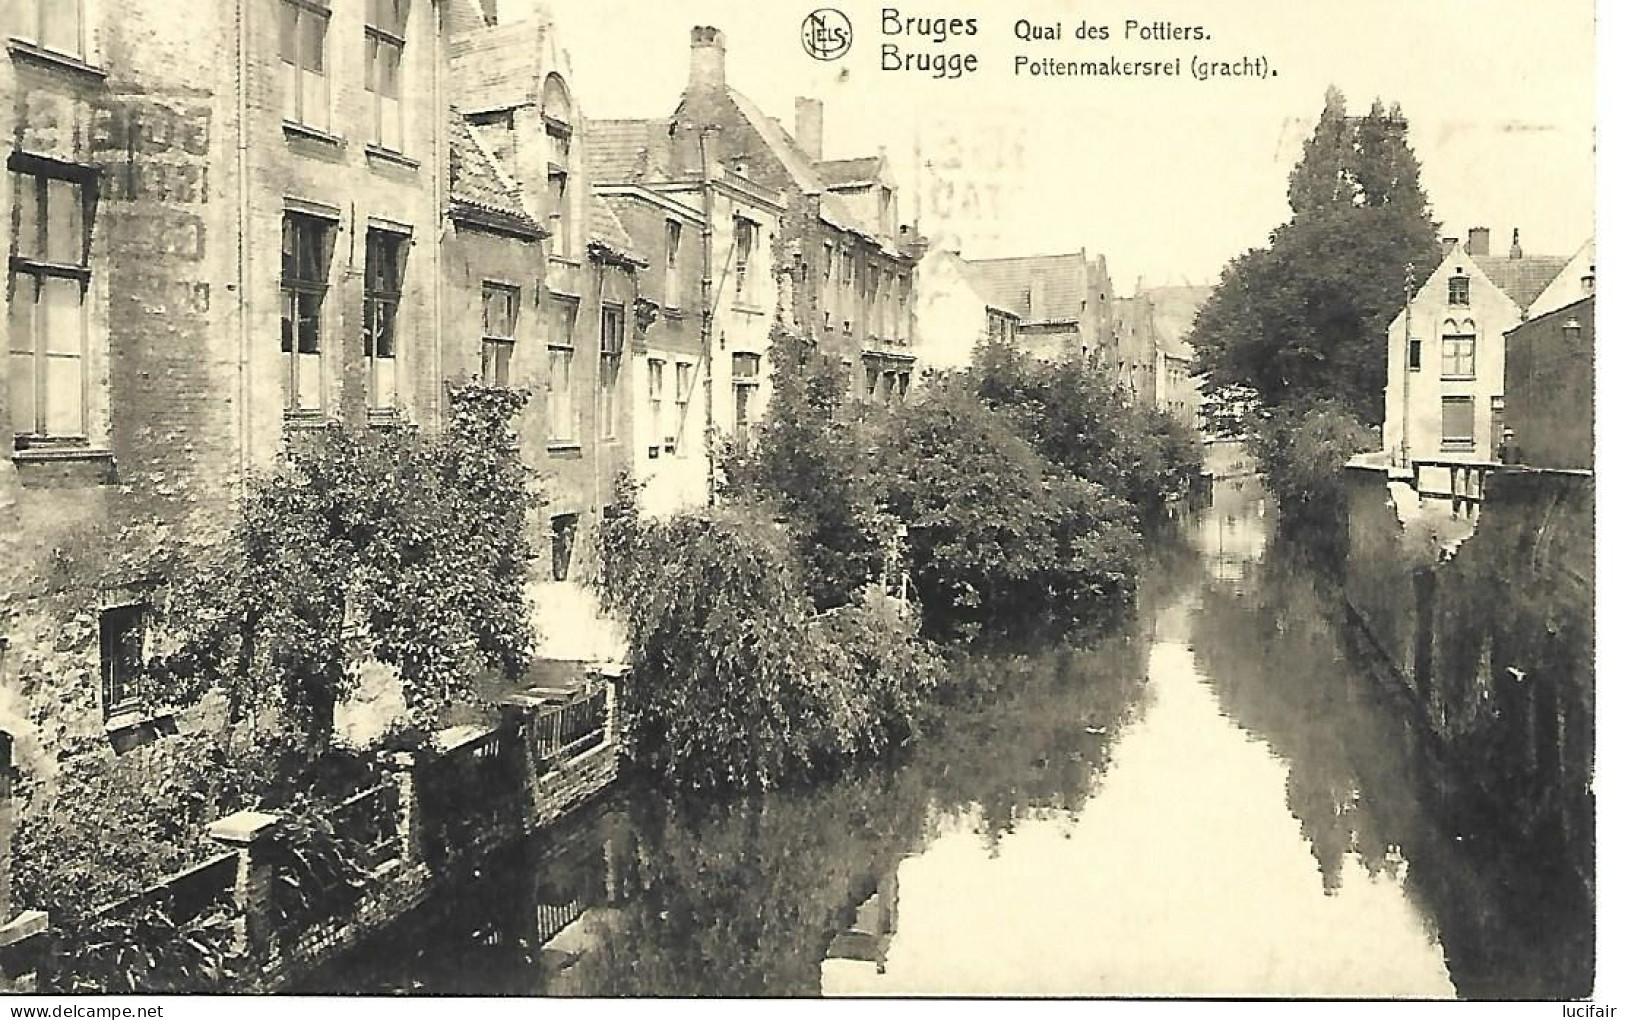 Brugge Pottemakersrei (61) - Damme